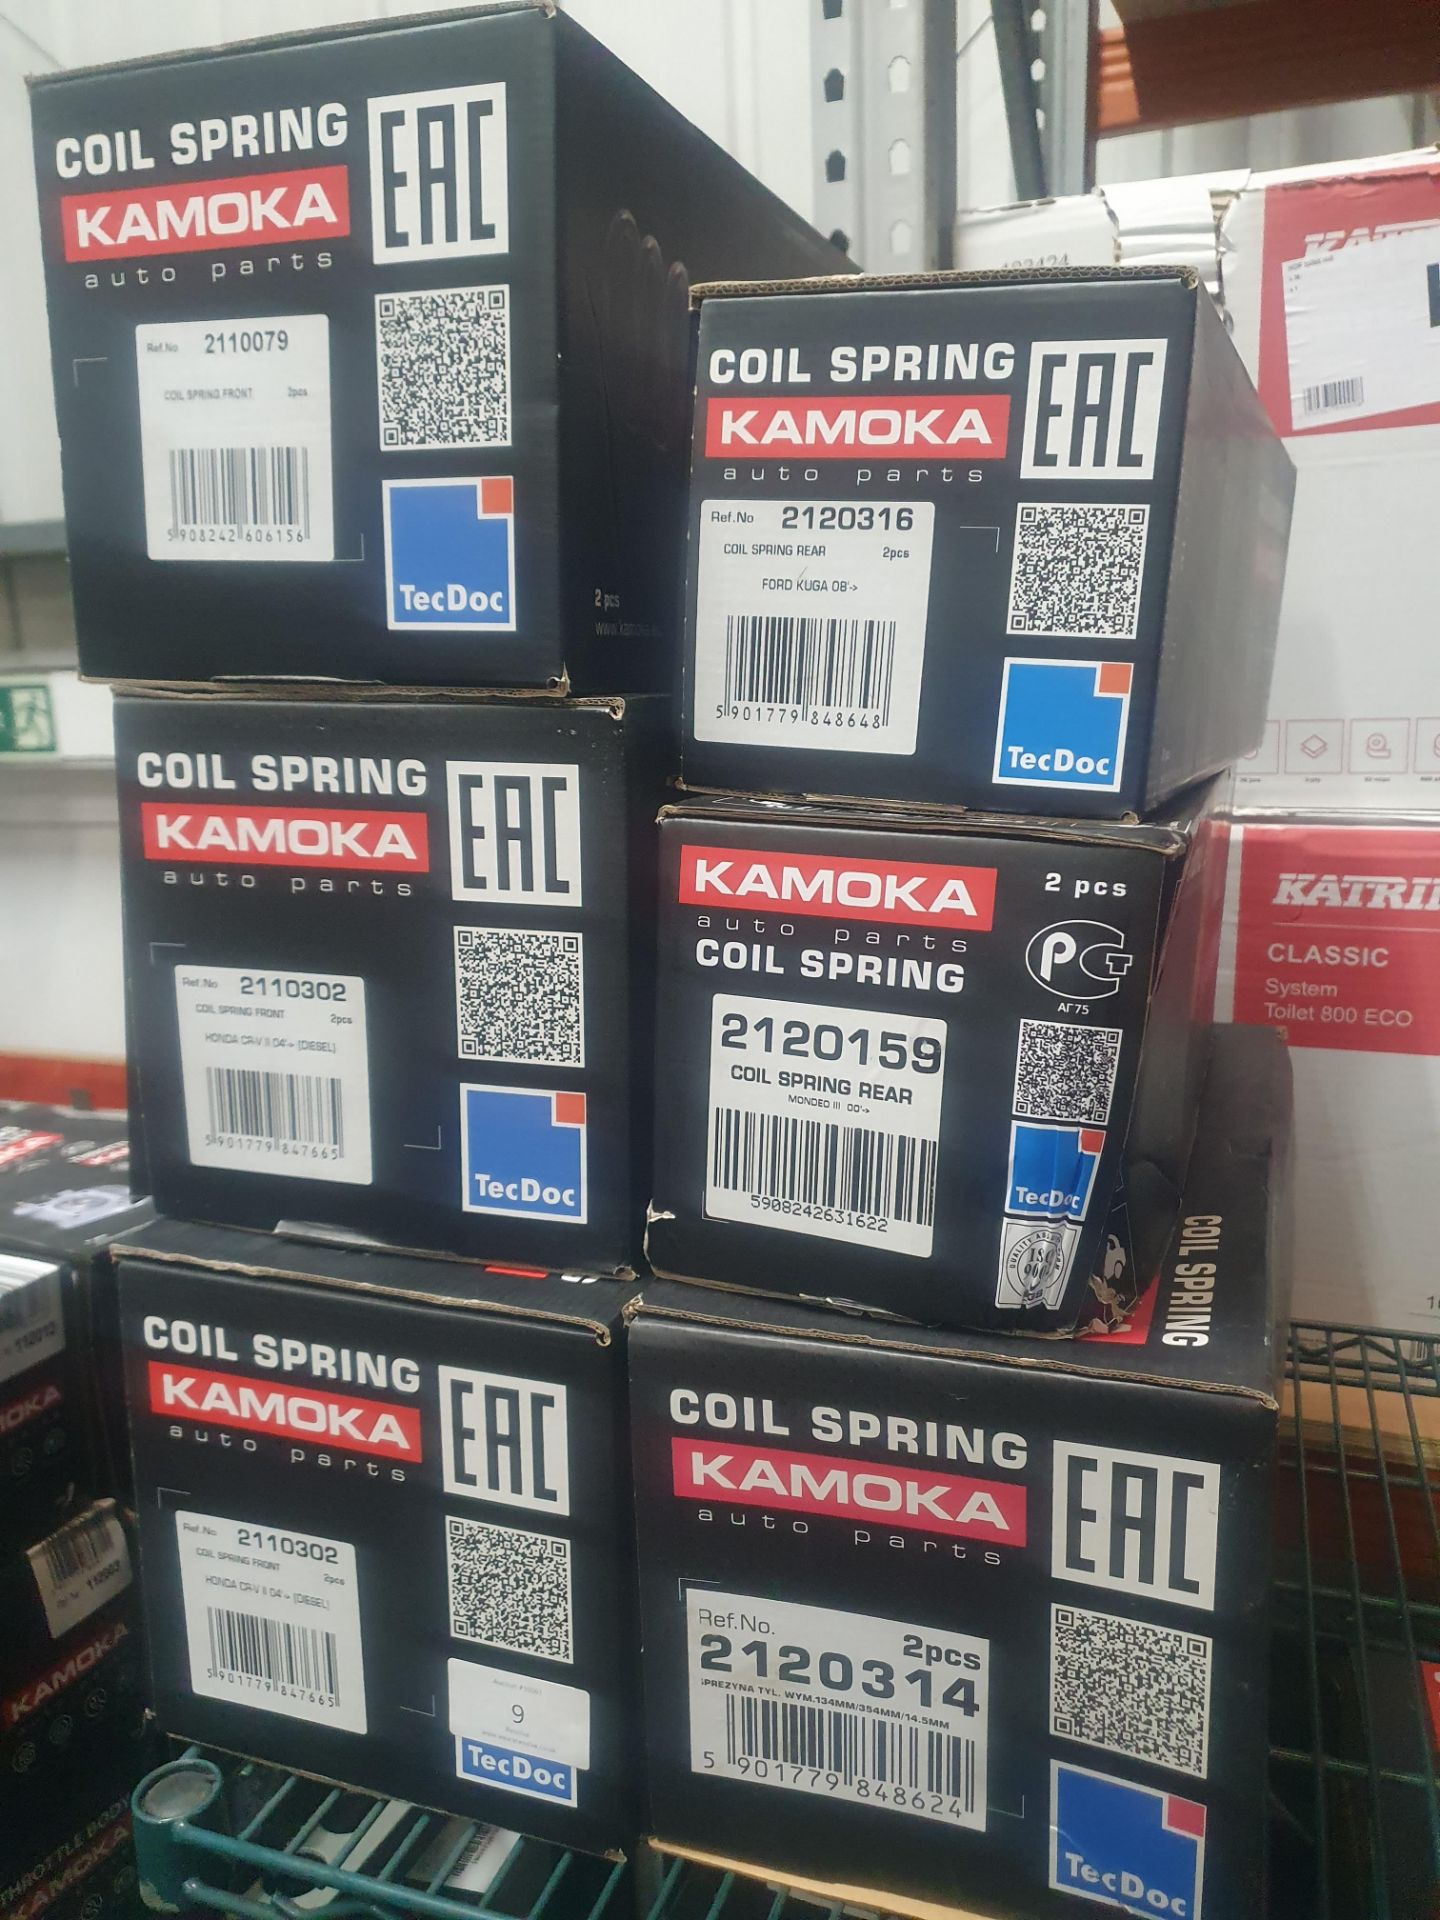 6 x Kamoka coil spring assorted